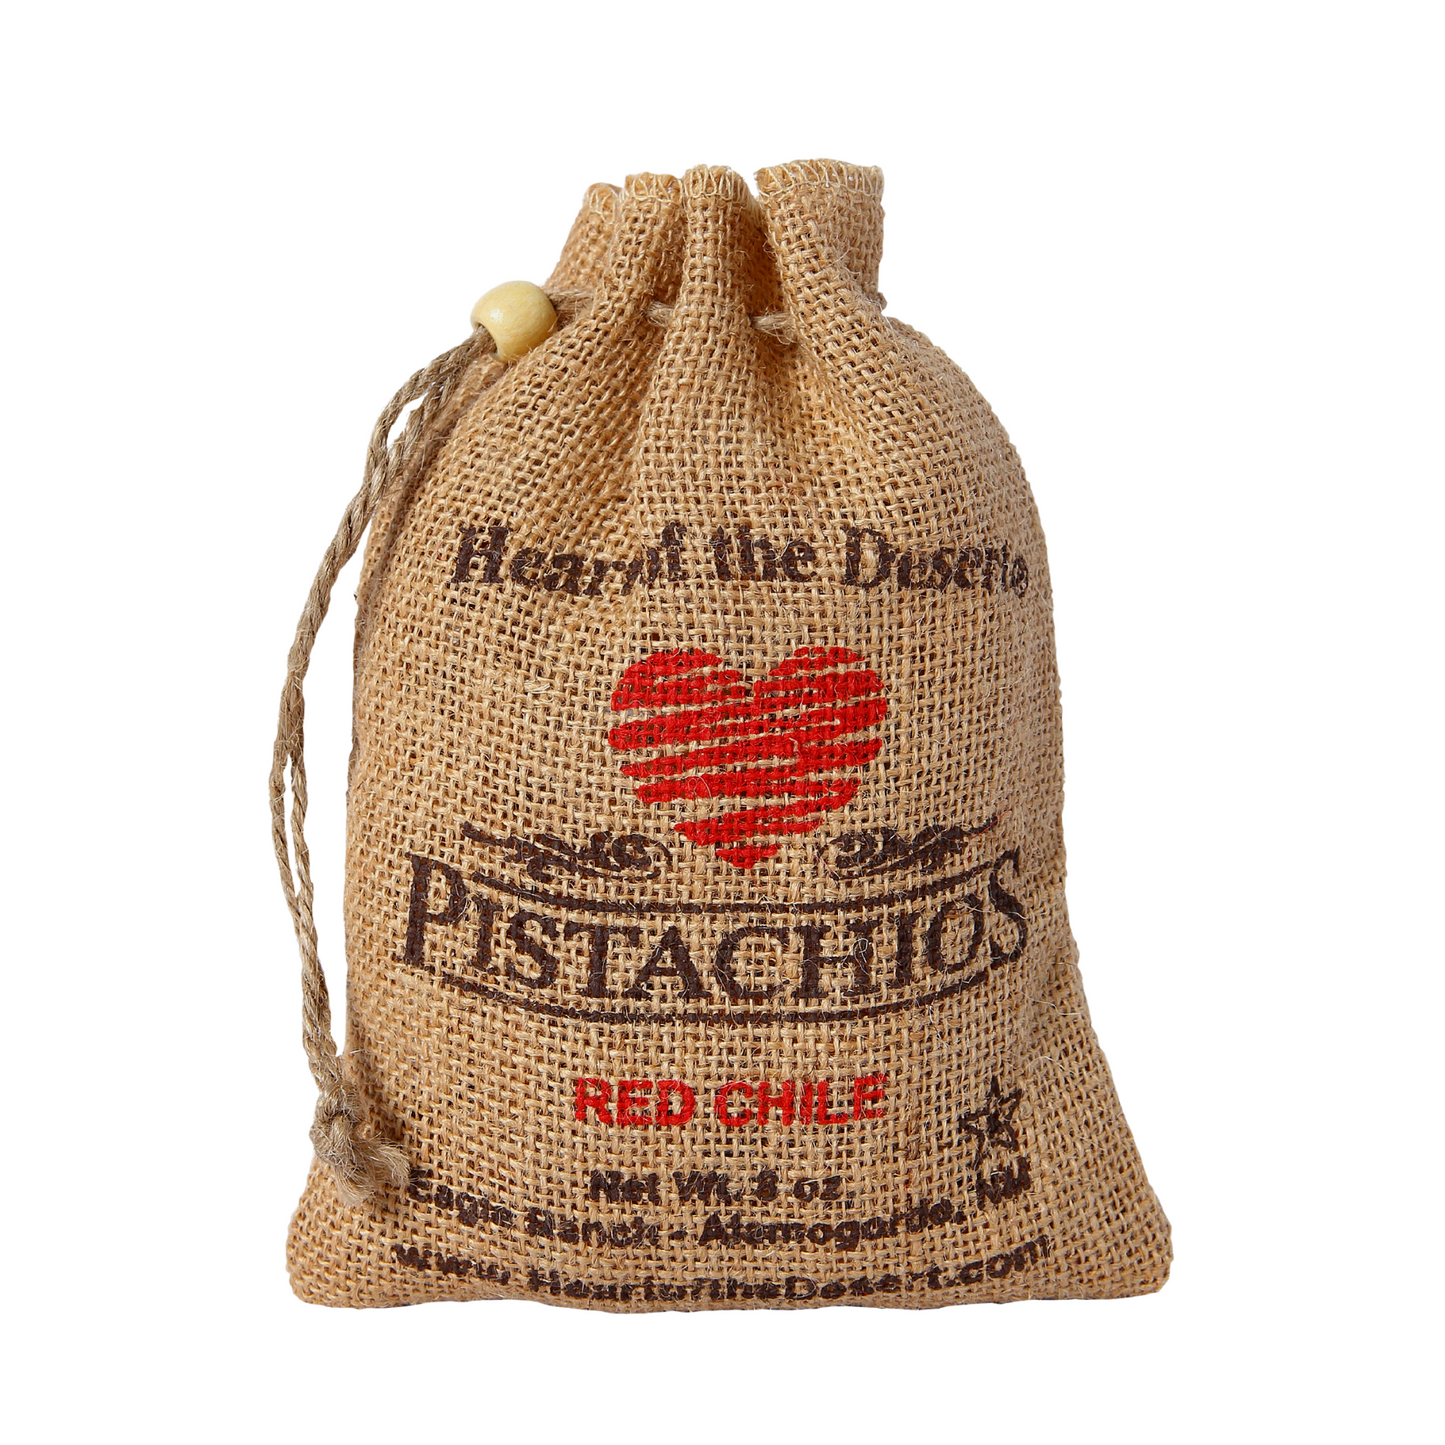 Pistachios - 1/2 LB Red Chile - burlap bag